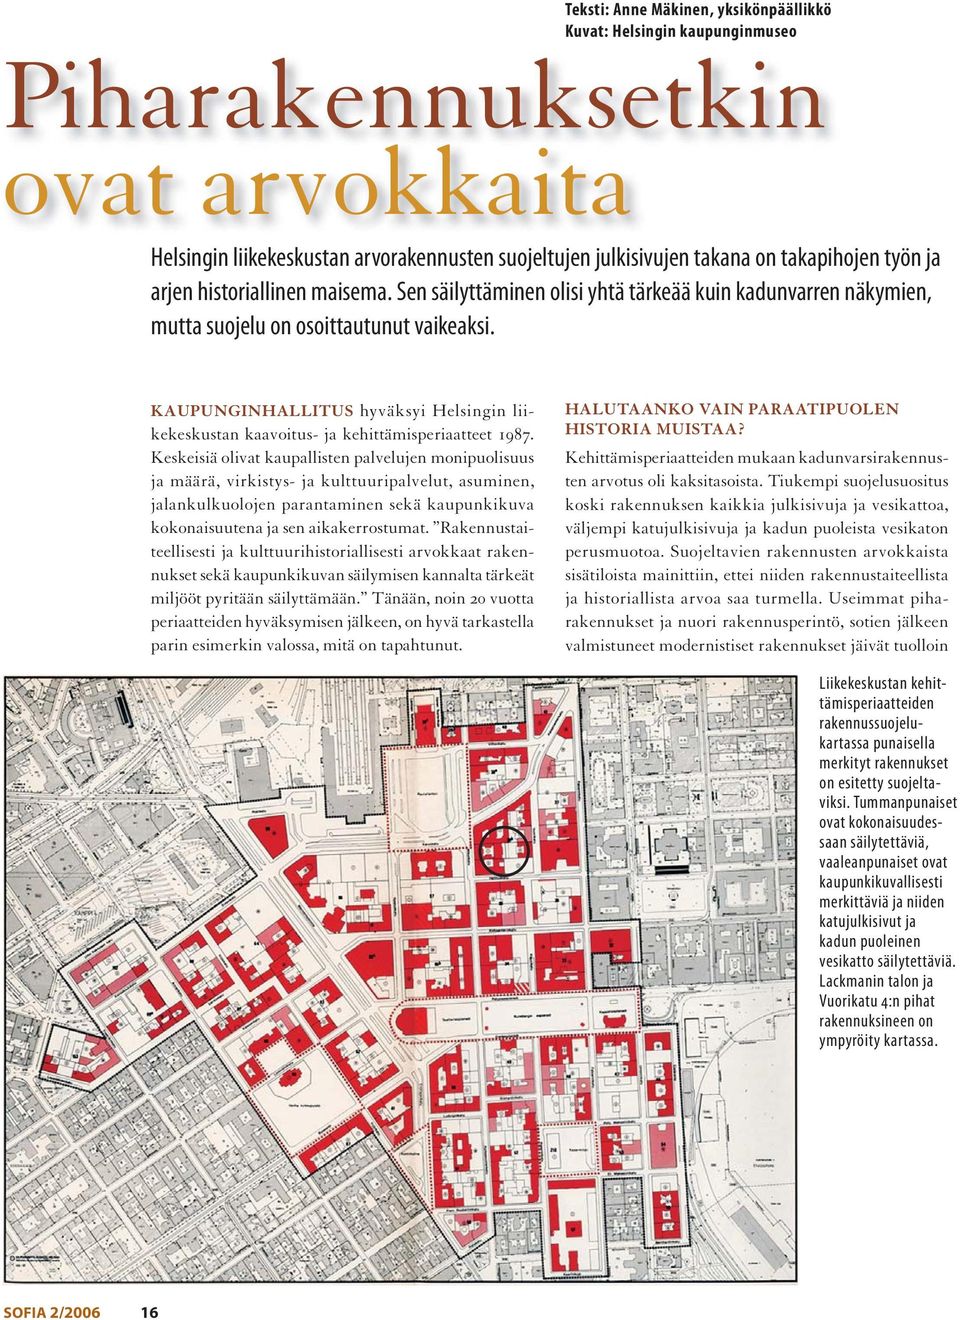 KAUPUNGINHALLITUS hyväksyi Helsingin liikekeskustan kaavoitus- ja kehittämisperiaatteet 1987.